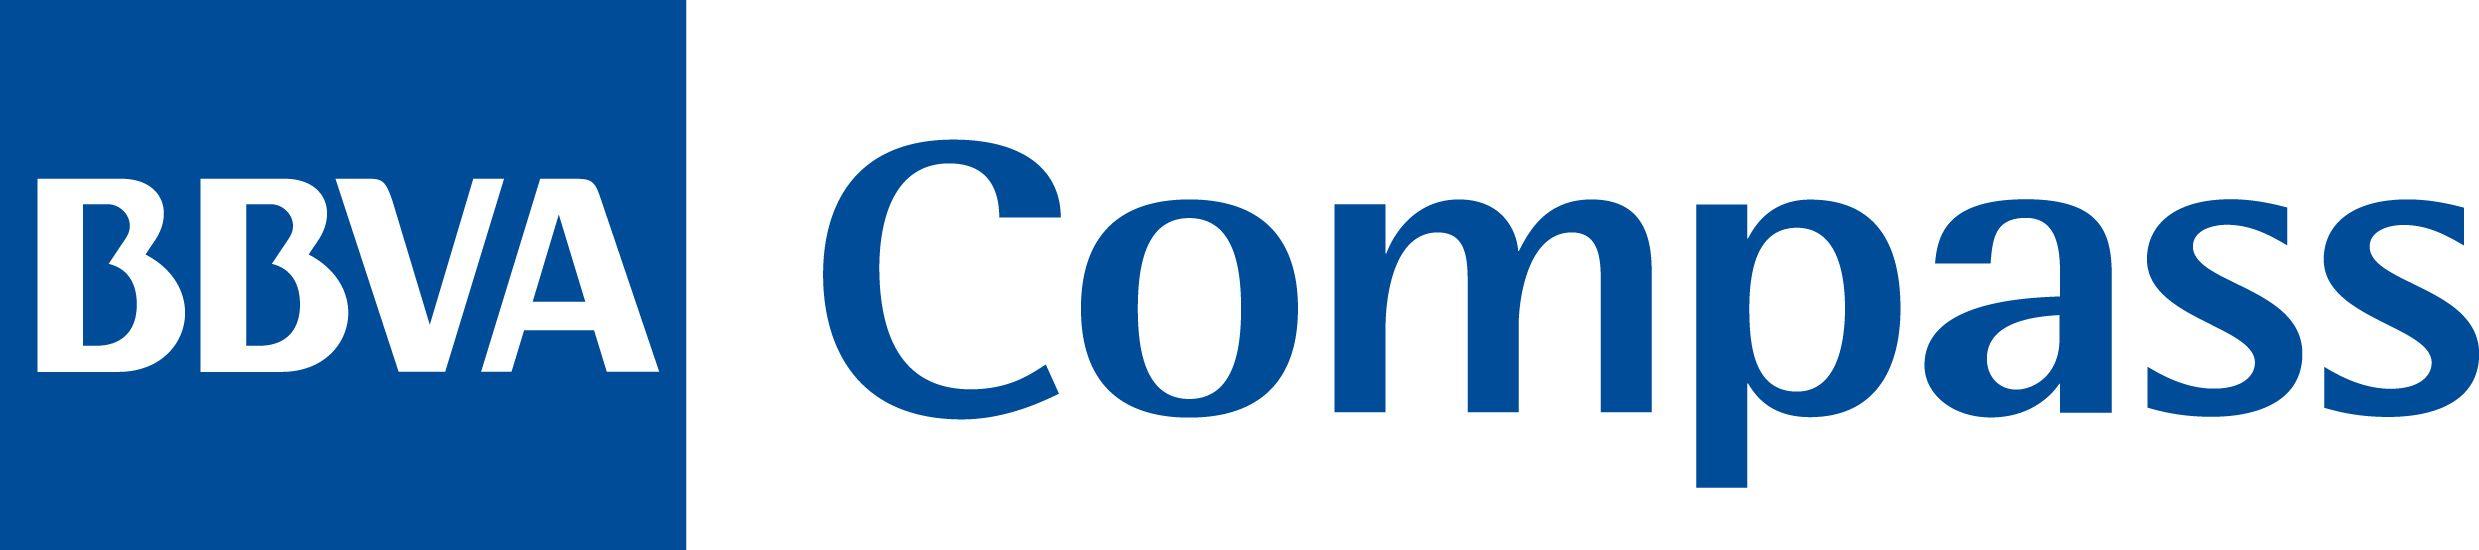 BBVA Compass Logo - BBVA Compass